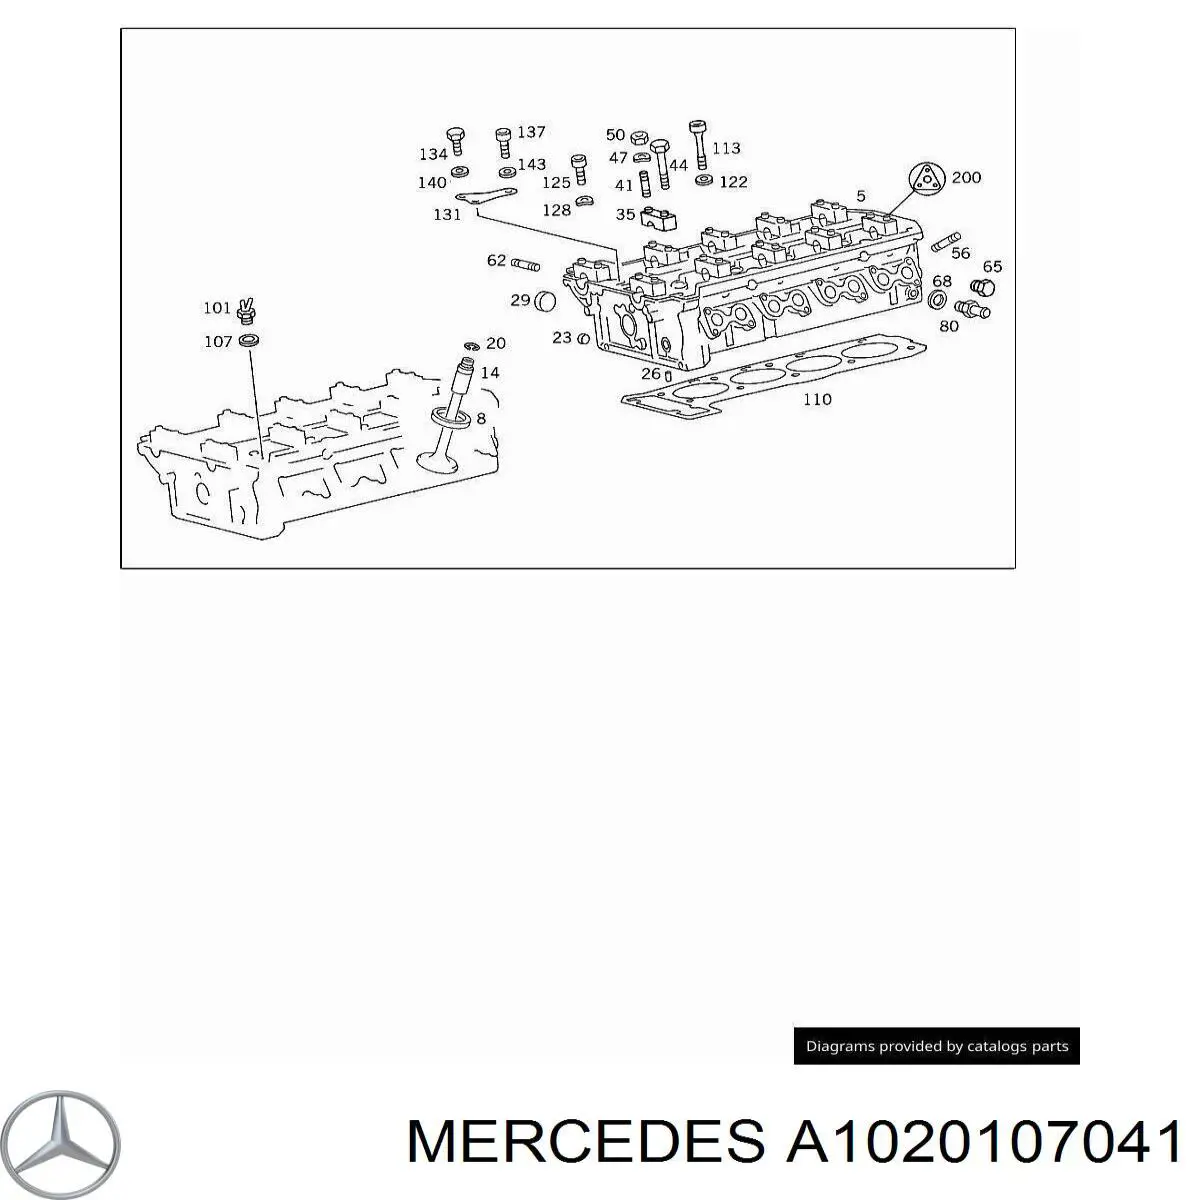 A1020107041 Mercedes комплект прокладок двигателя верхний